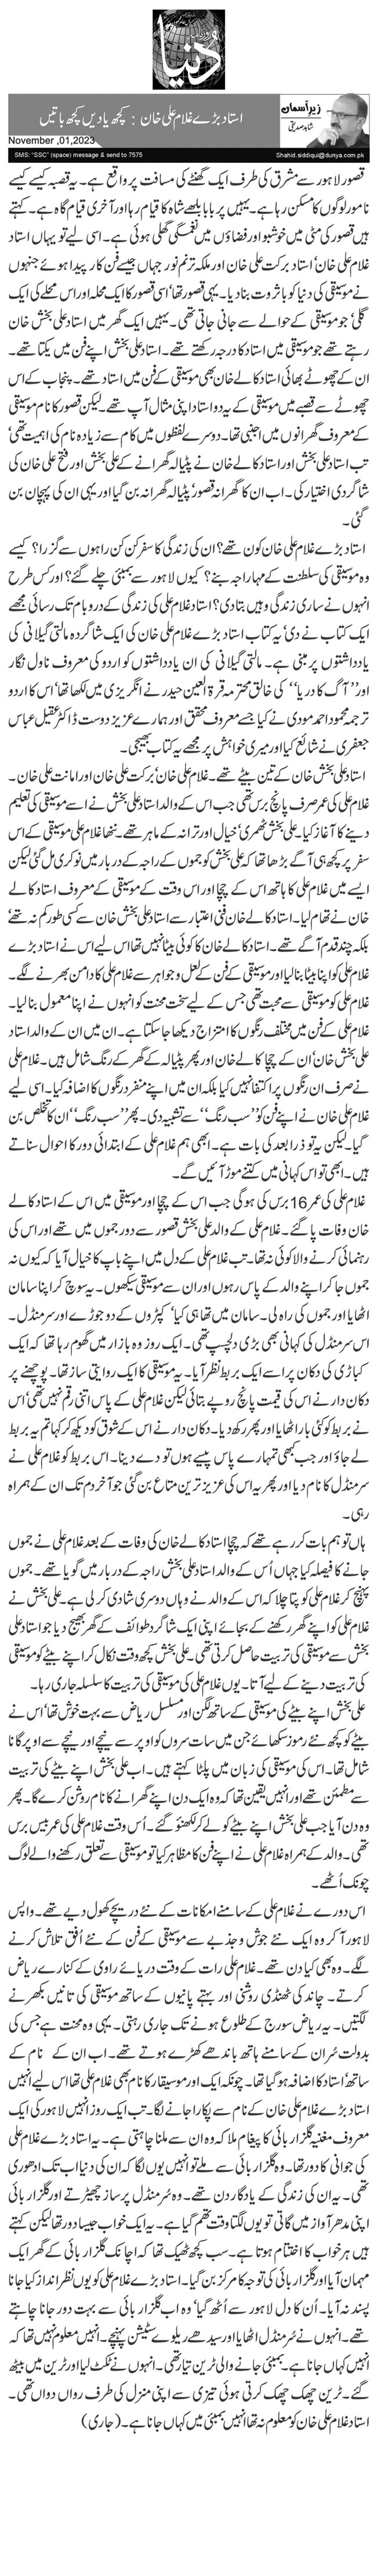 استاد بڑے غلام علی خان: کچھ یادیں کچھ باتیں